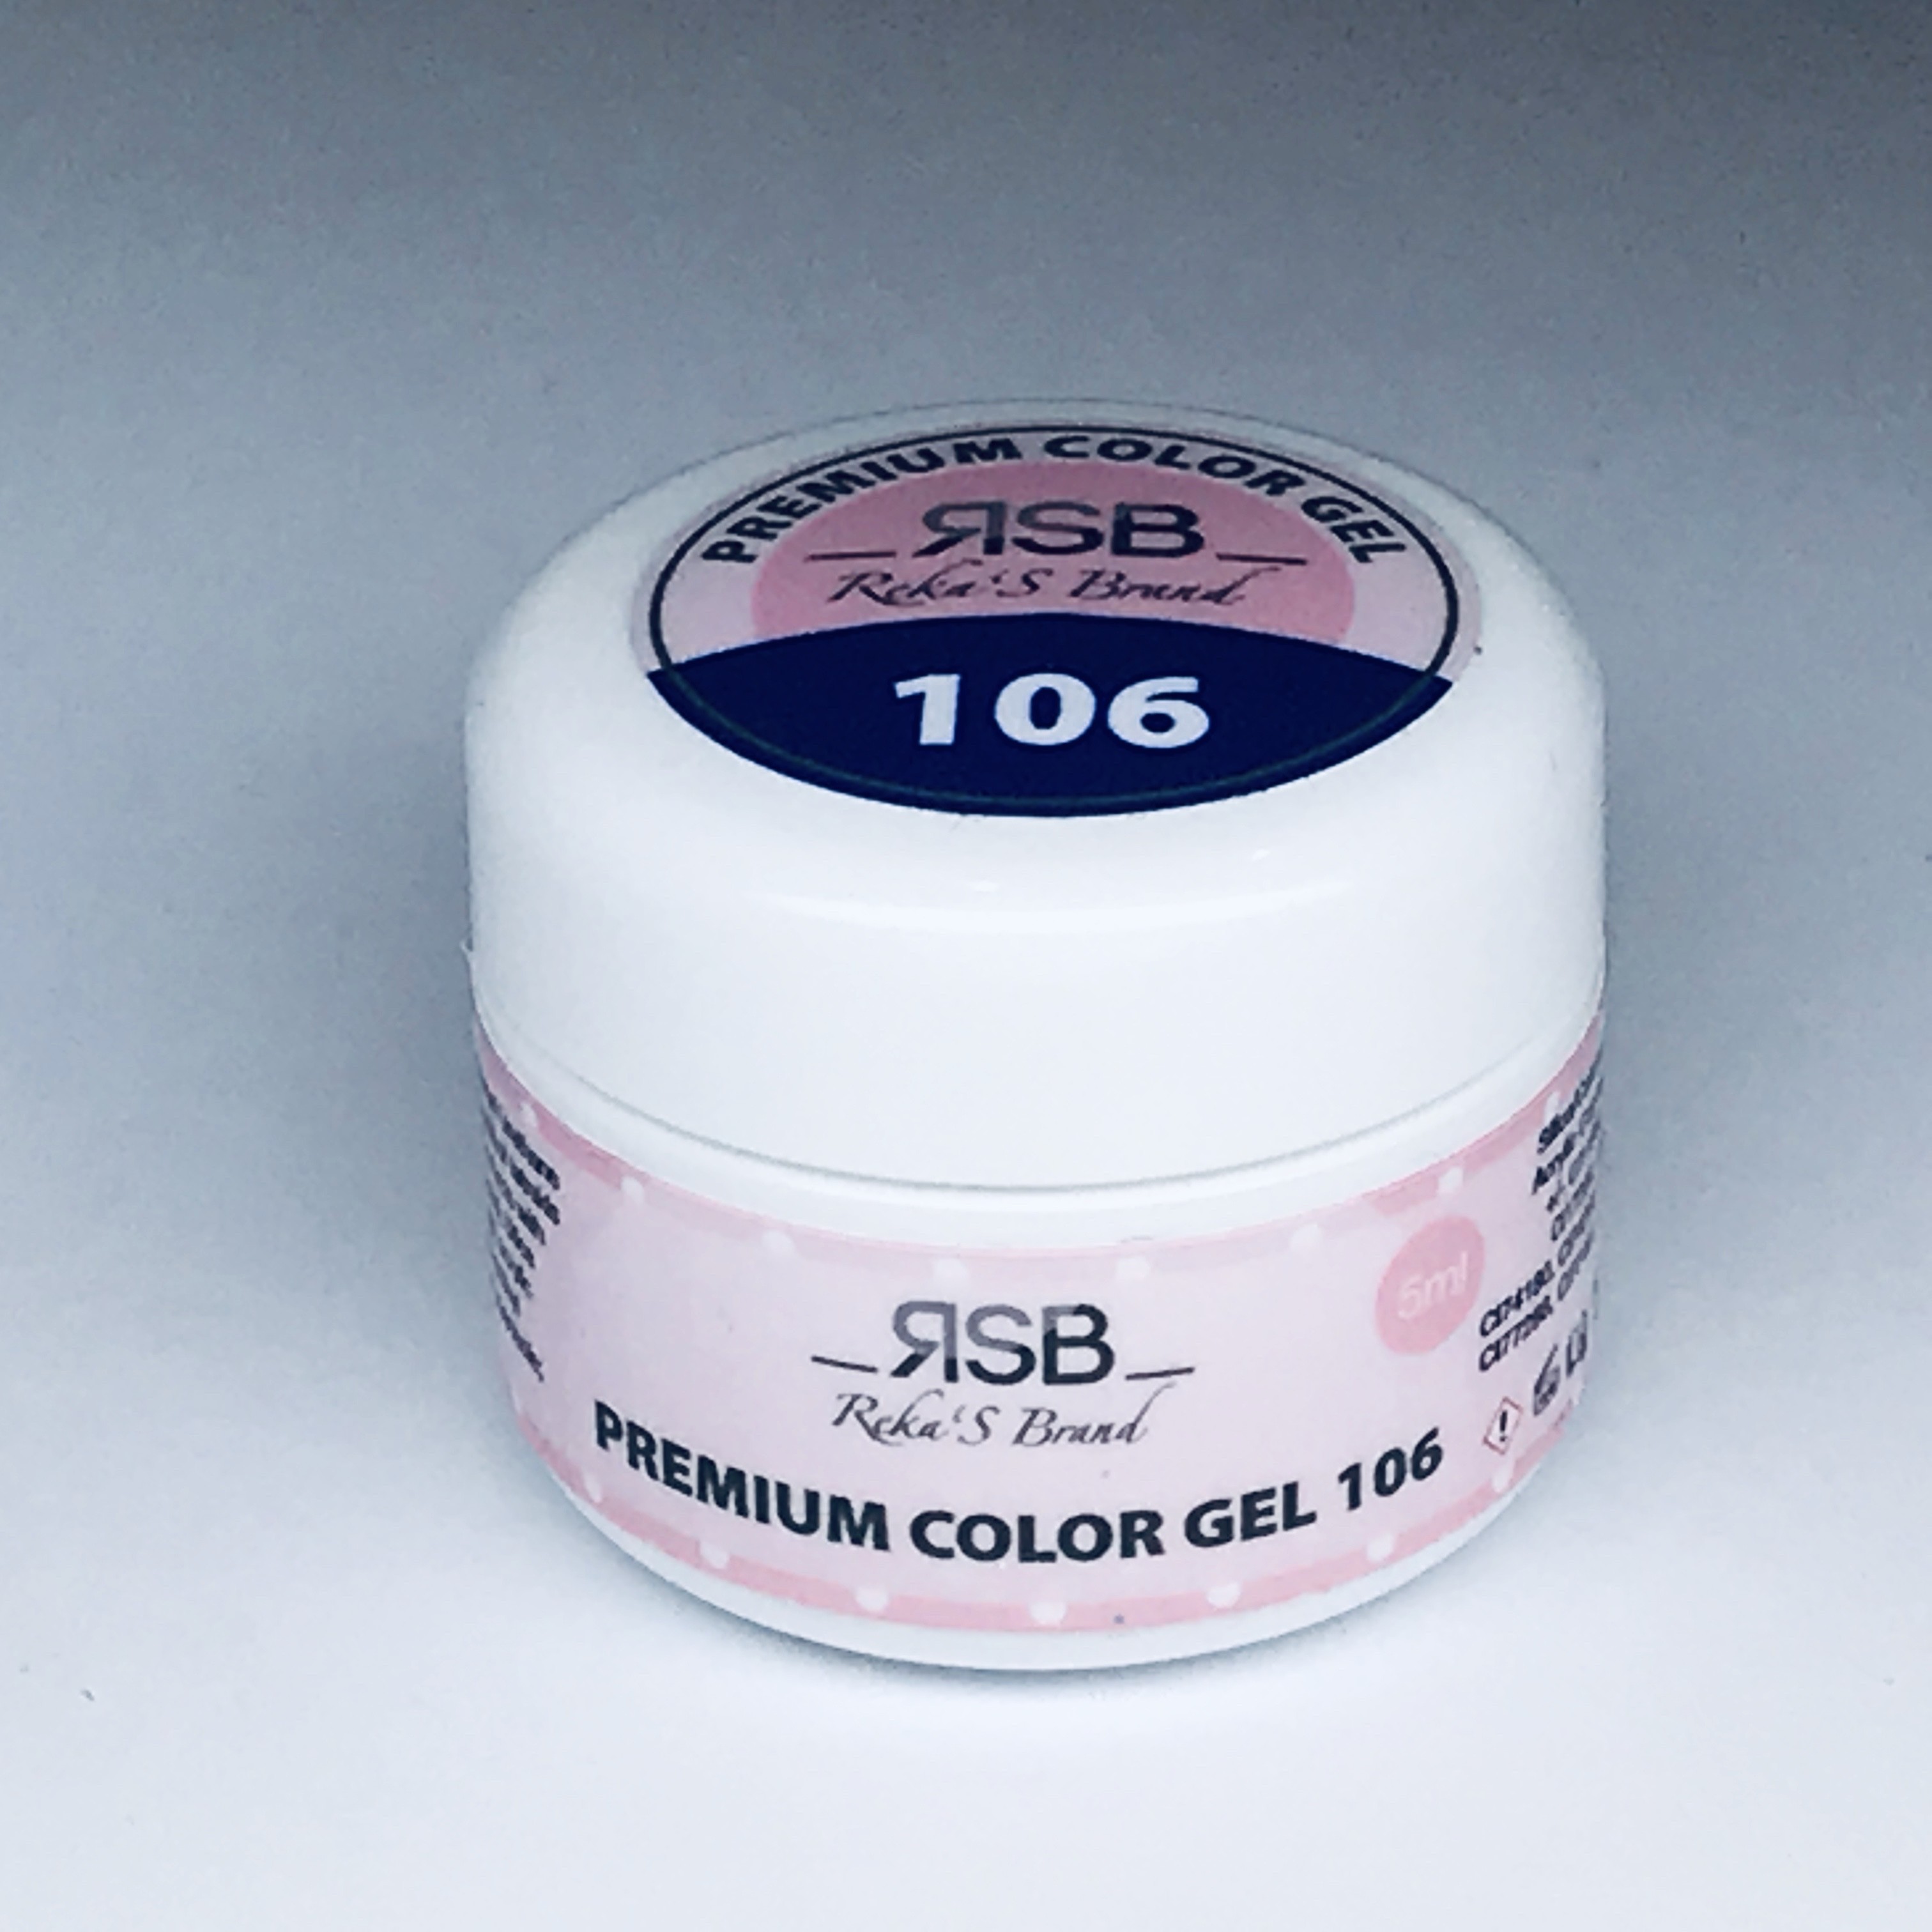 Premium Color Gel 106